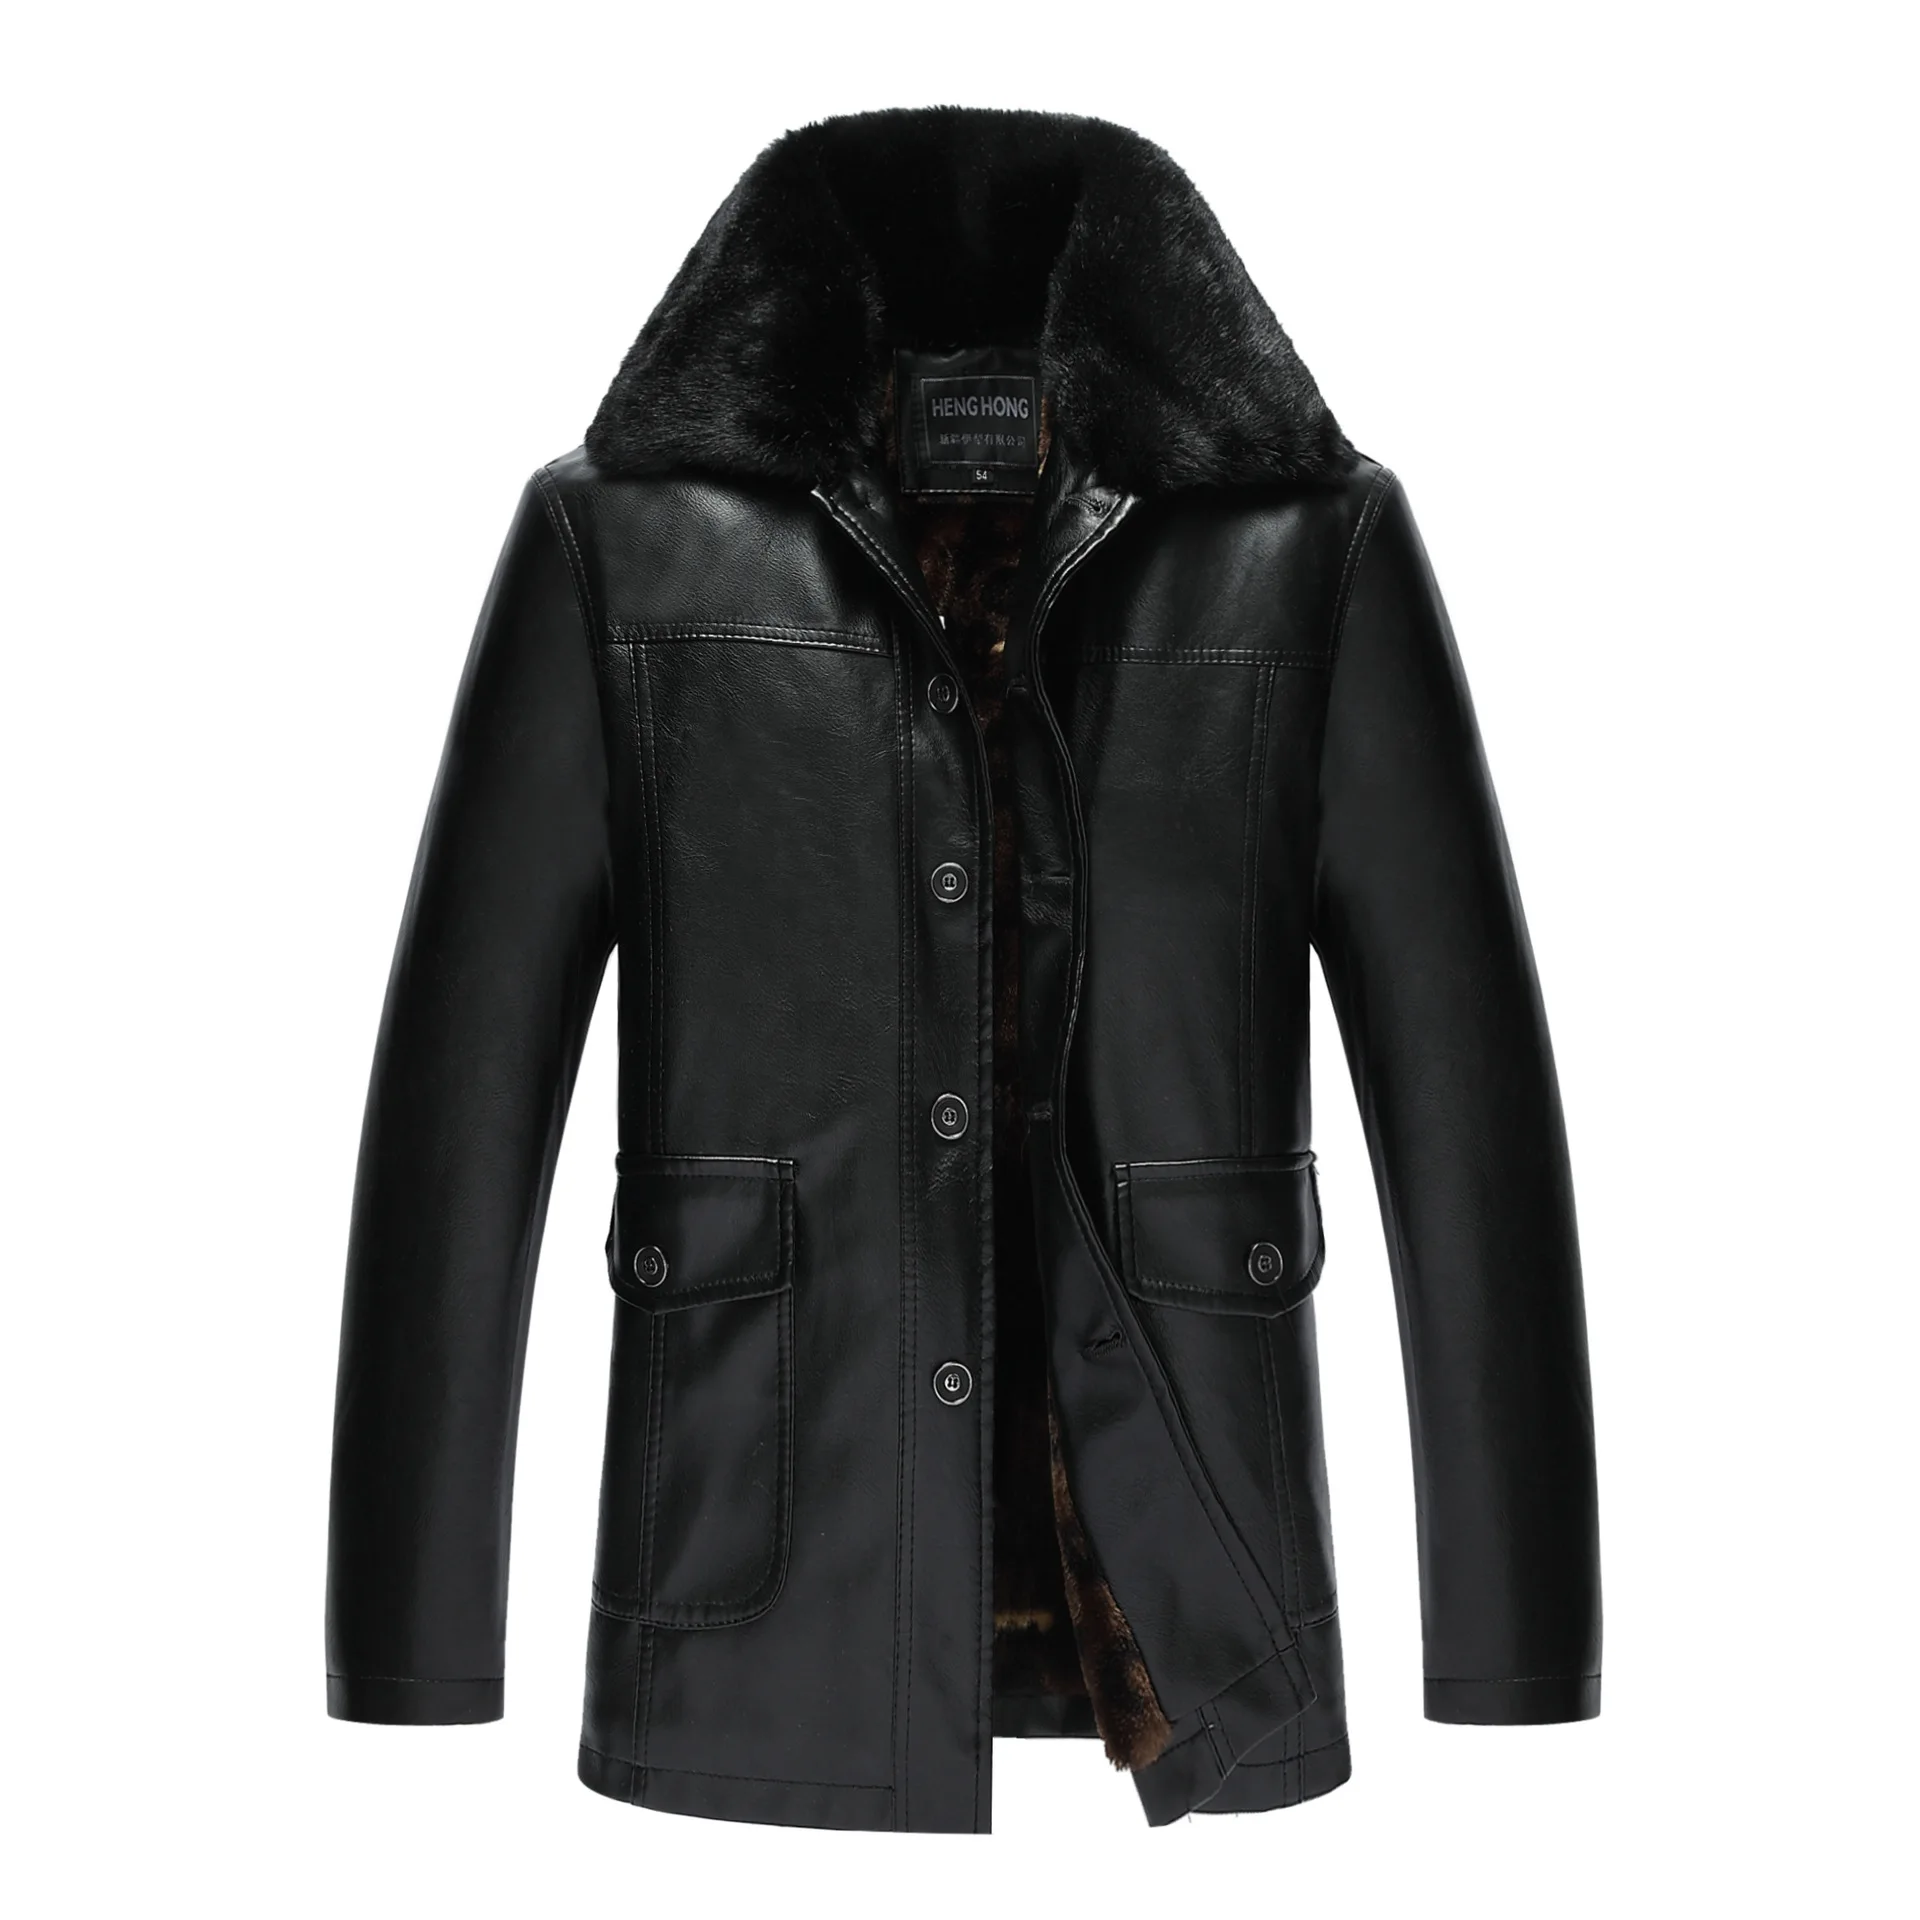 Кожаная мужская куртка, Мужская зимняя кожаная куртка, Мужское пальто из искусственного меха, мужская кожаная куртка, мужские кожаные куртки и пальто - Цвет: Черный